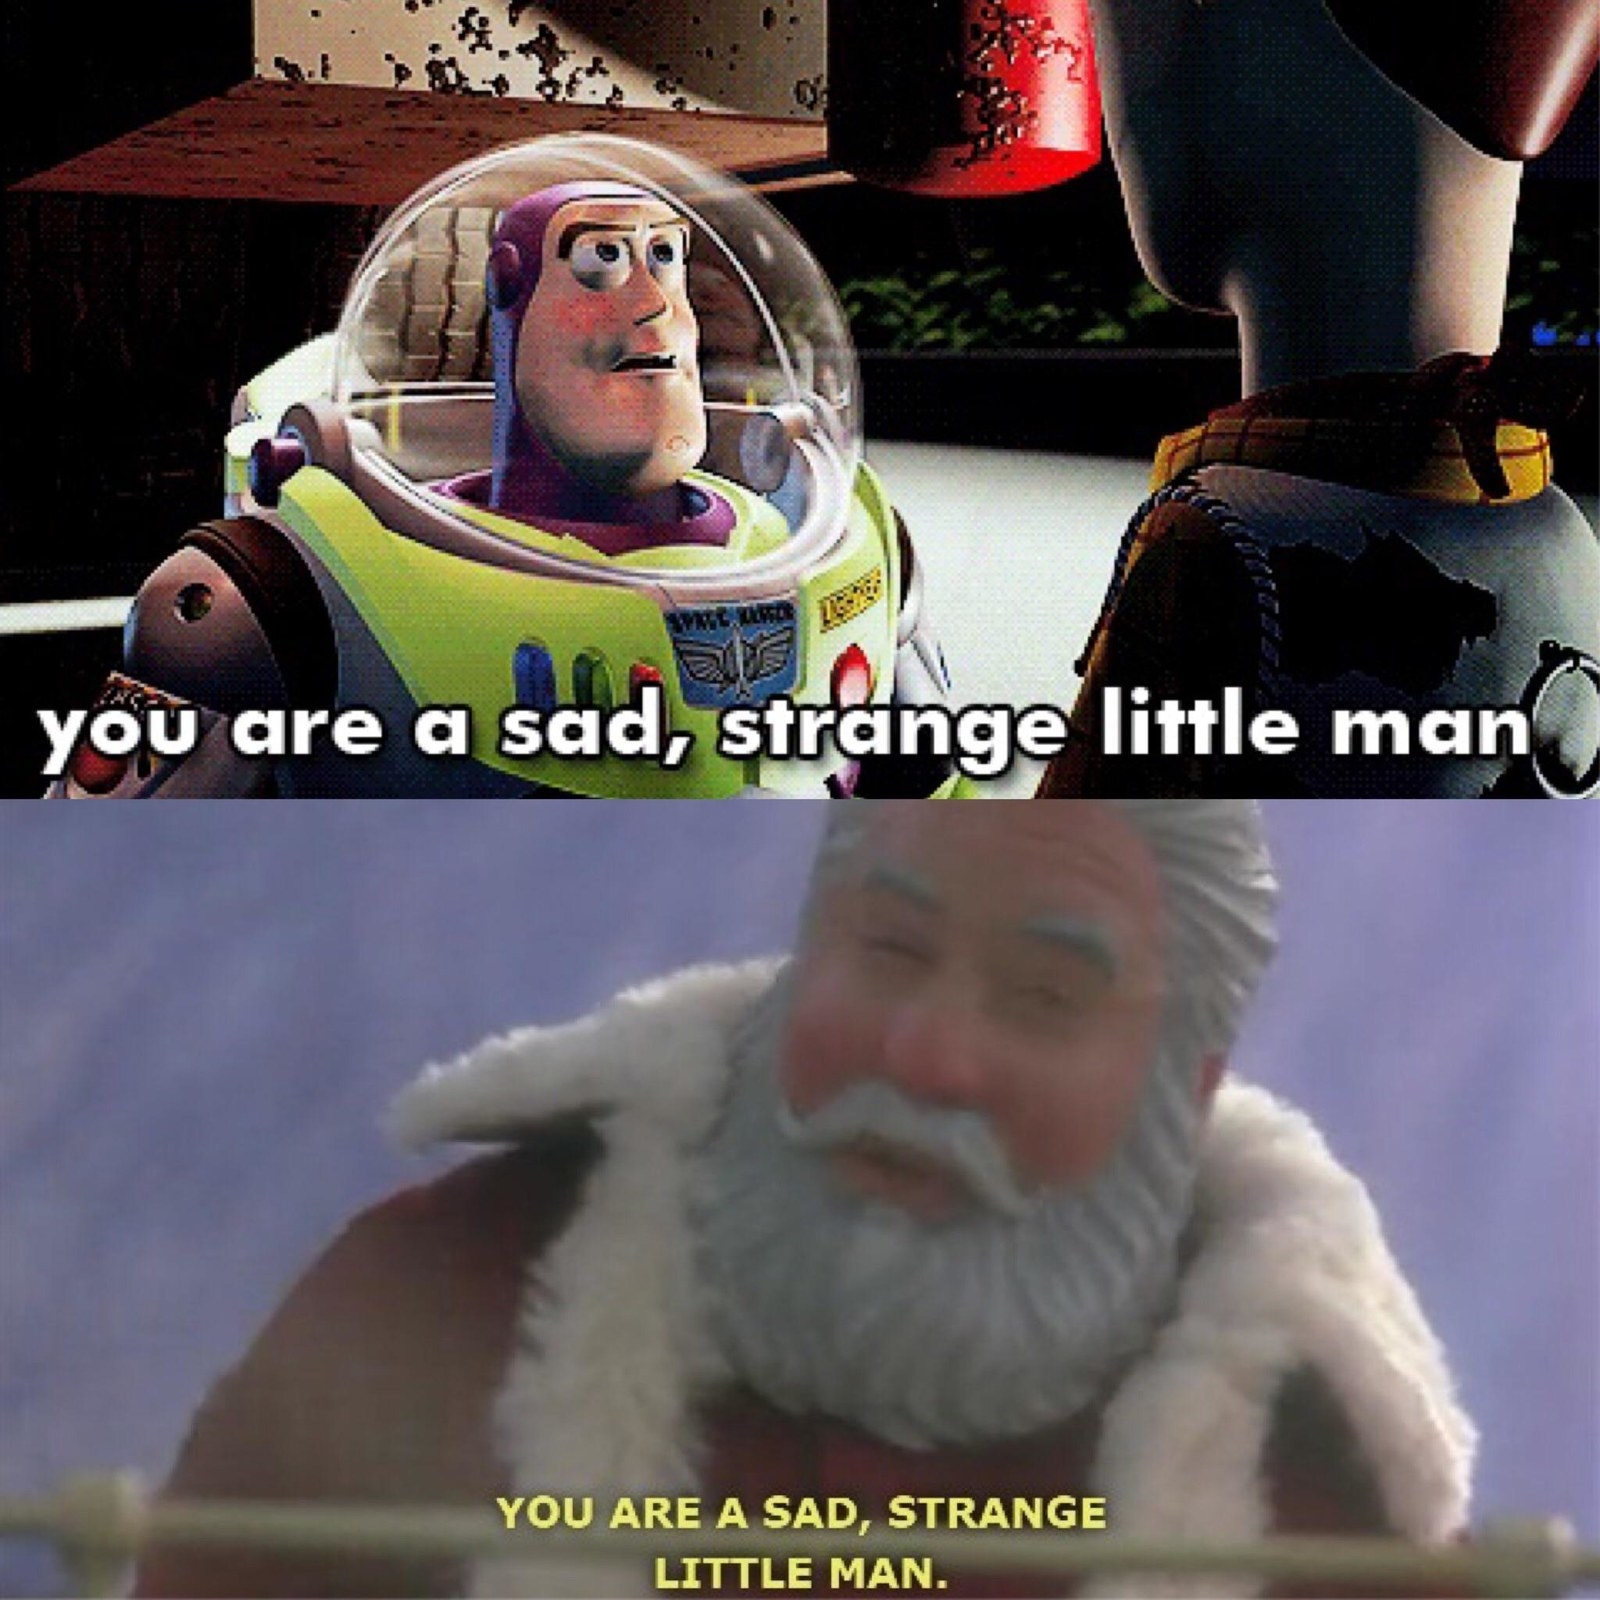 &quot;You are a sad, strange little man&quot;